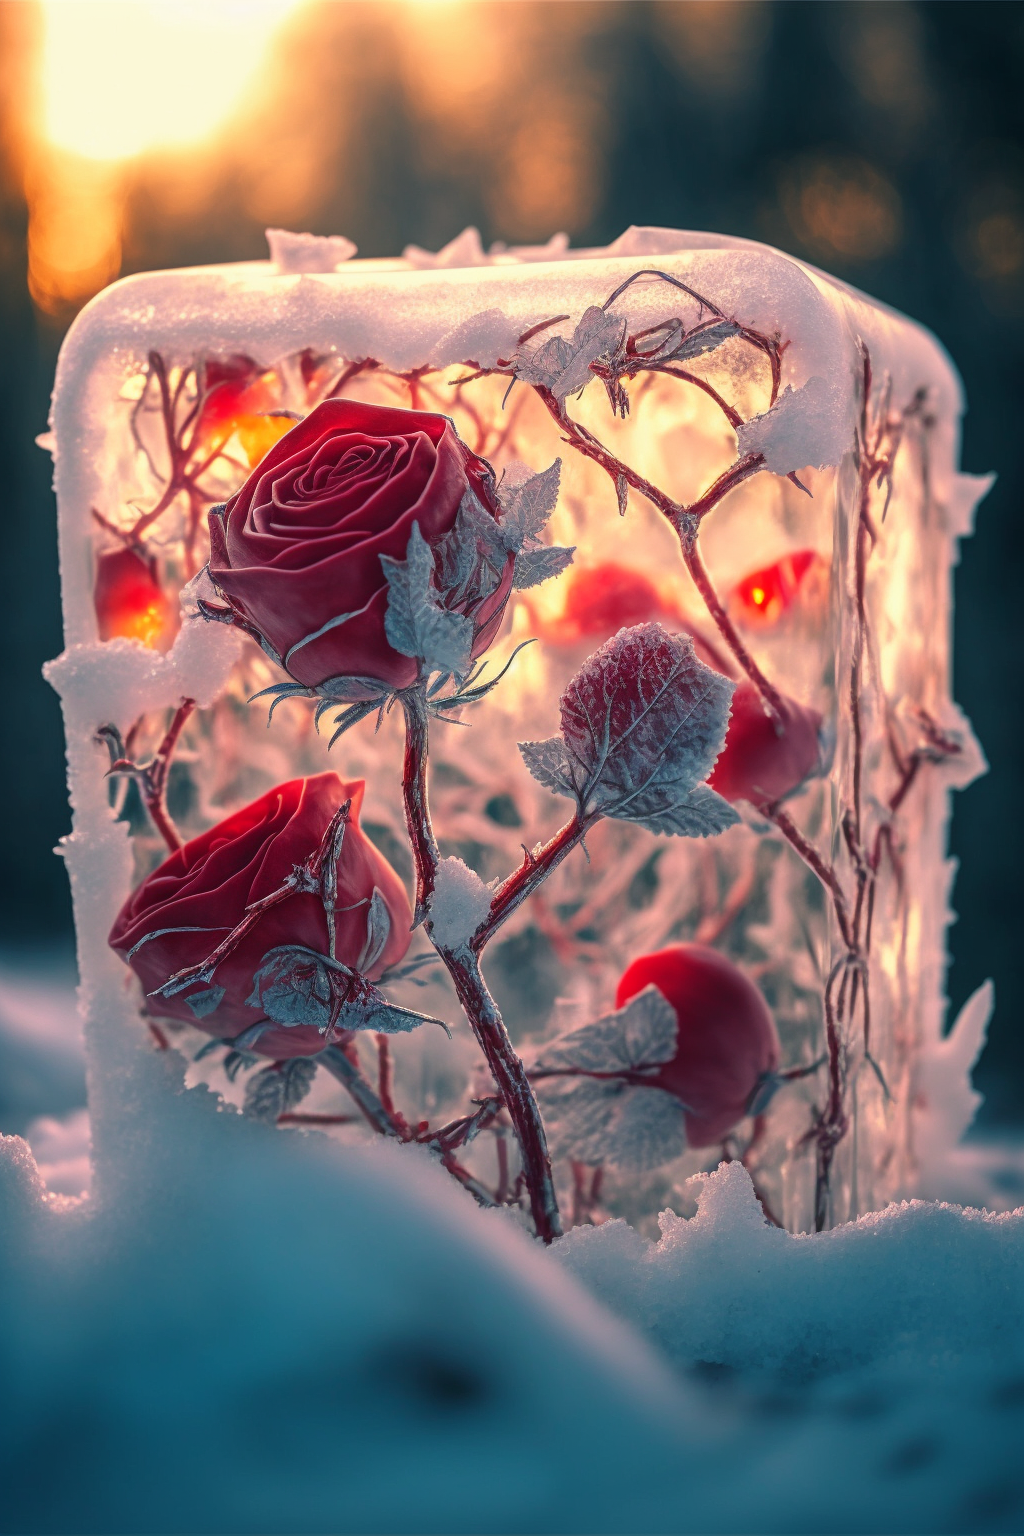 冰封红玫瑰 - 全部作品 - 素材集市